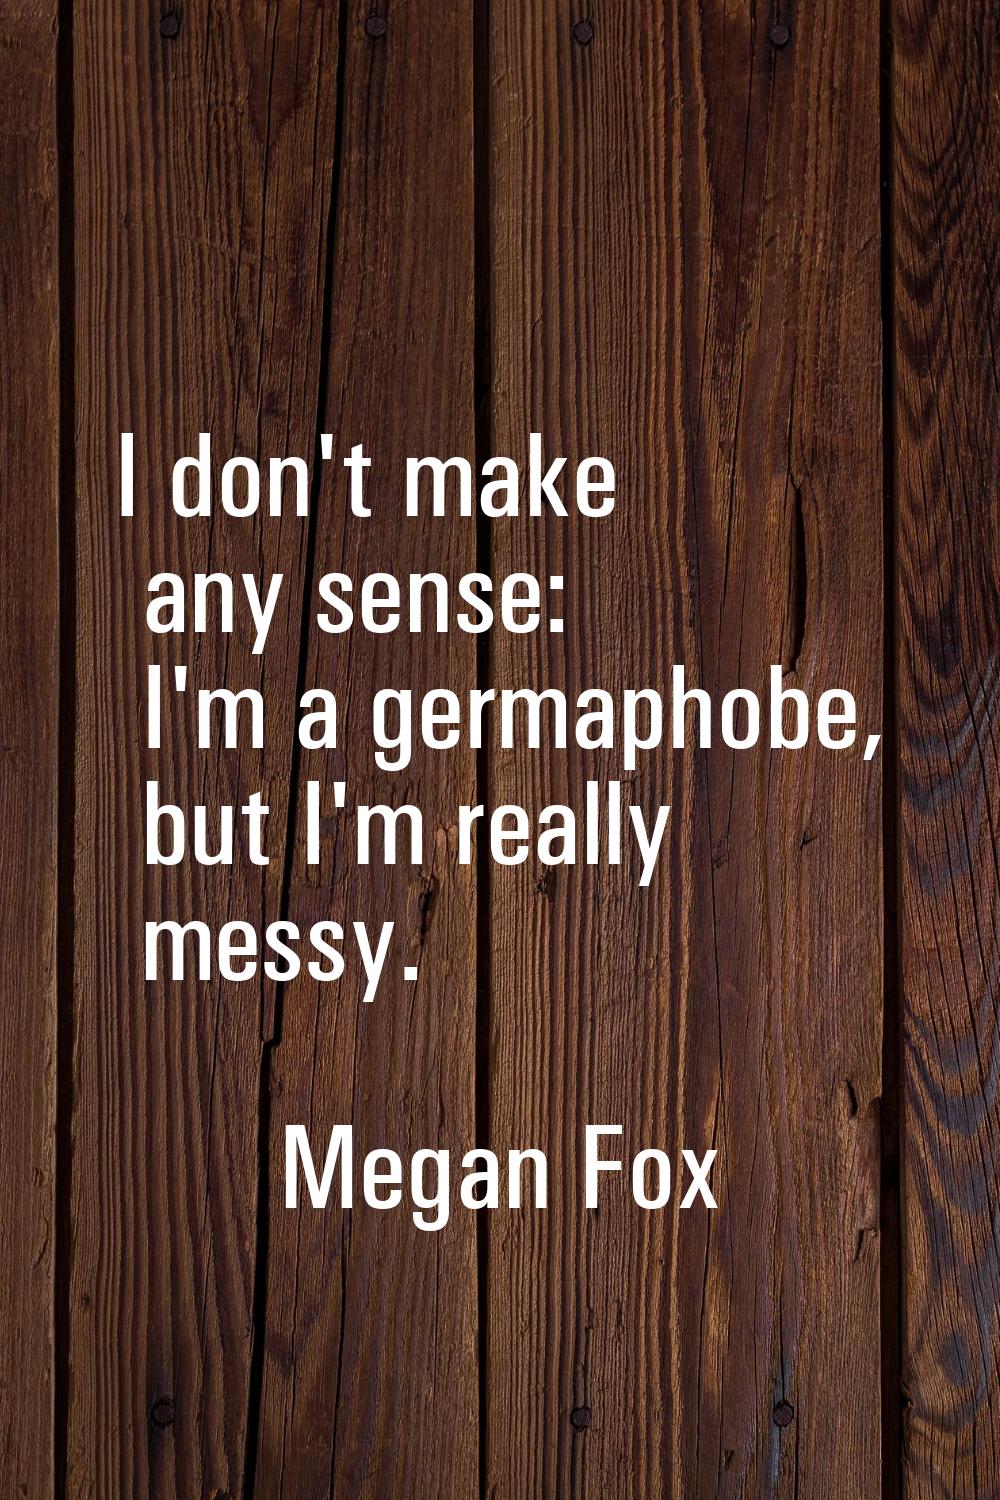 I don't make any sense: I'm a germaphobe, but I'm really messy.